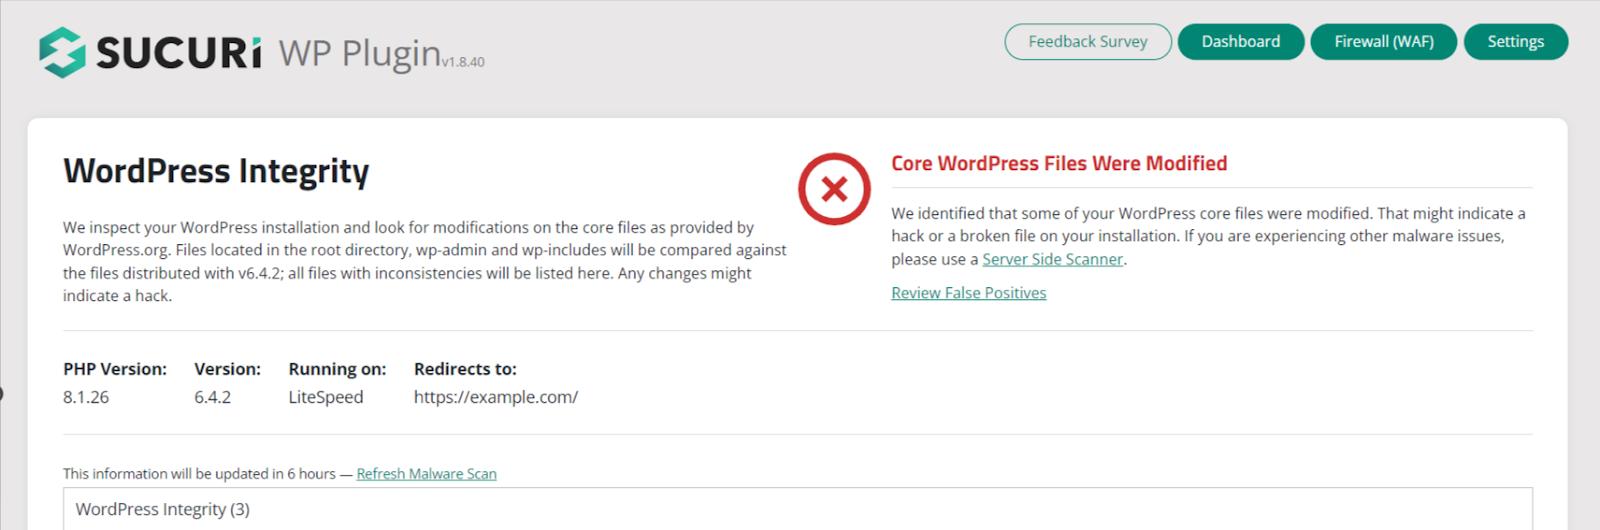 instale el complemento Sucuri para proteger un sitio de WordPress